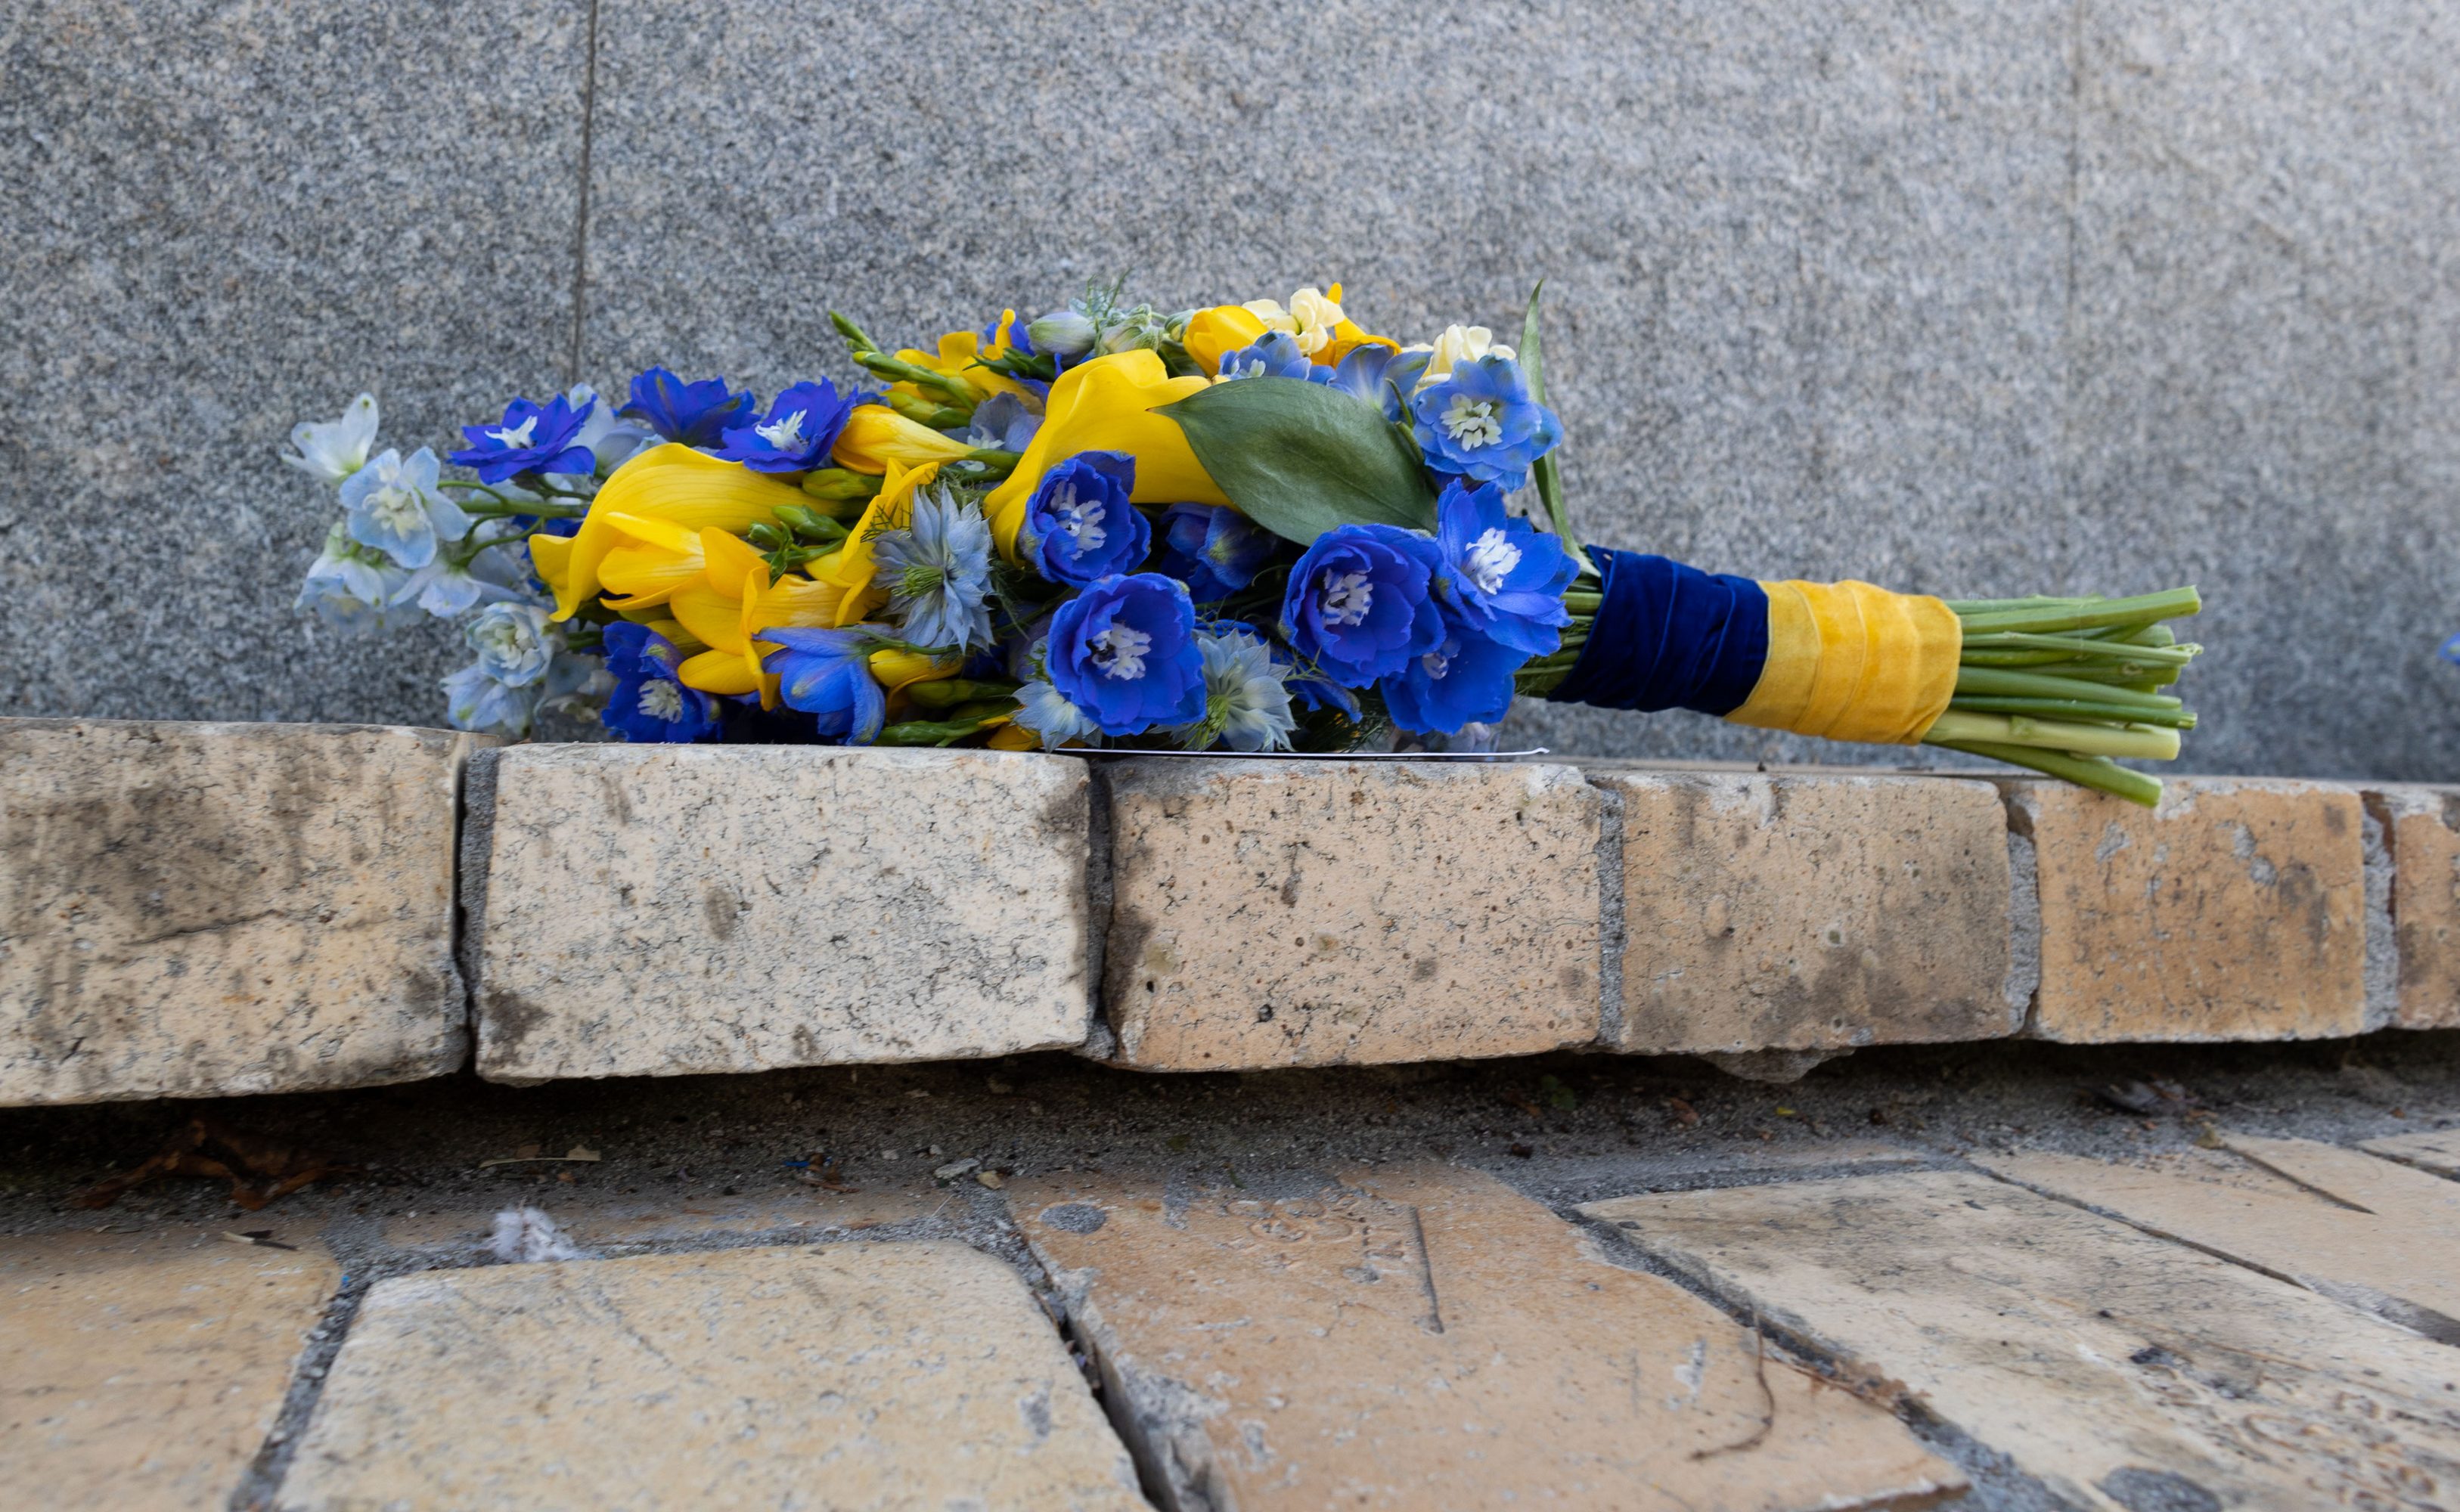 Blau-gelber Blumenstrauß, abgelegt vor einer Gedenkmauer, am Ukrainischen Unabhängigkeitstag 2022